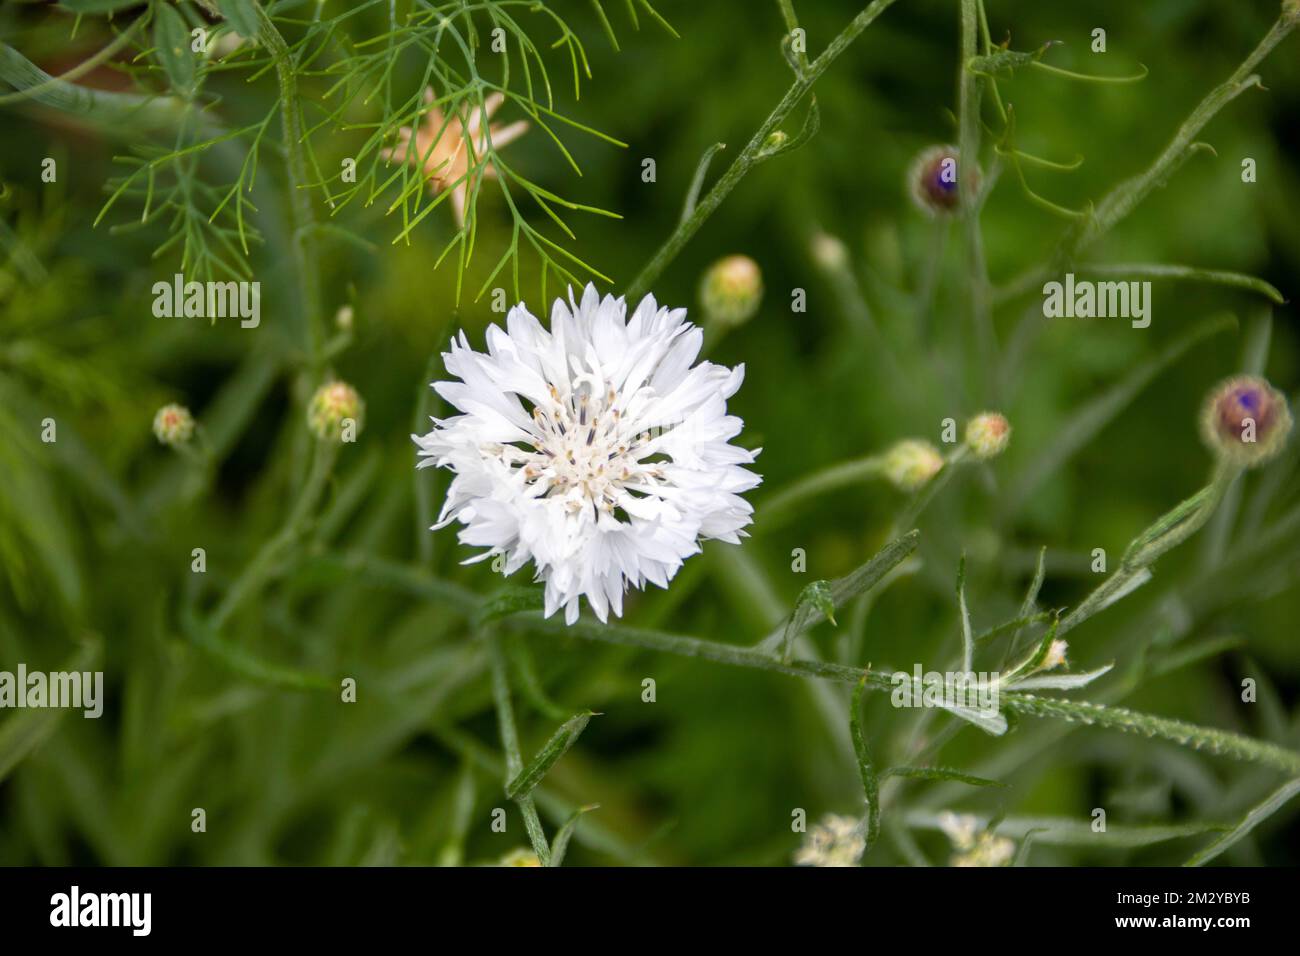 jolie fleur blanche de la cornflower également connue sous le nom de bouton de baccalauréat Banque D'Images